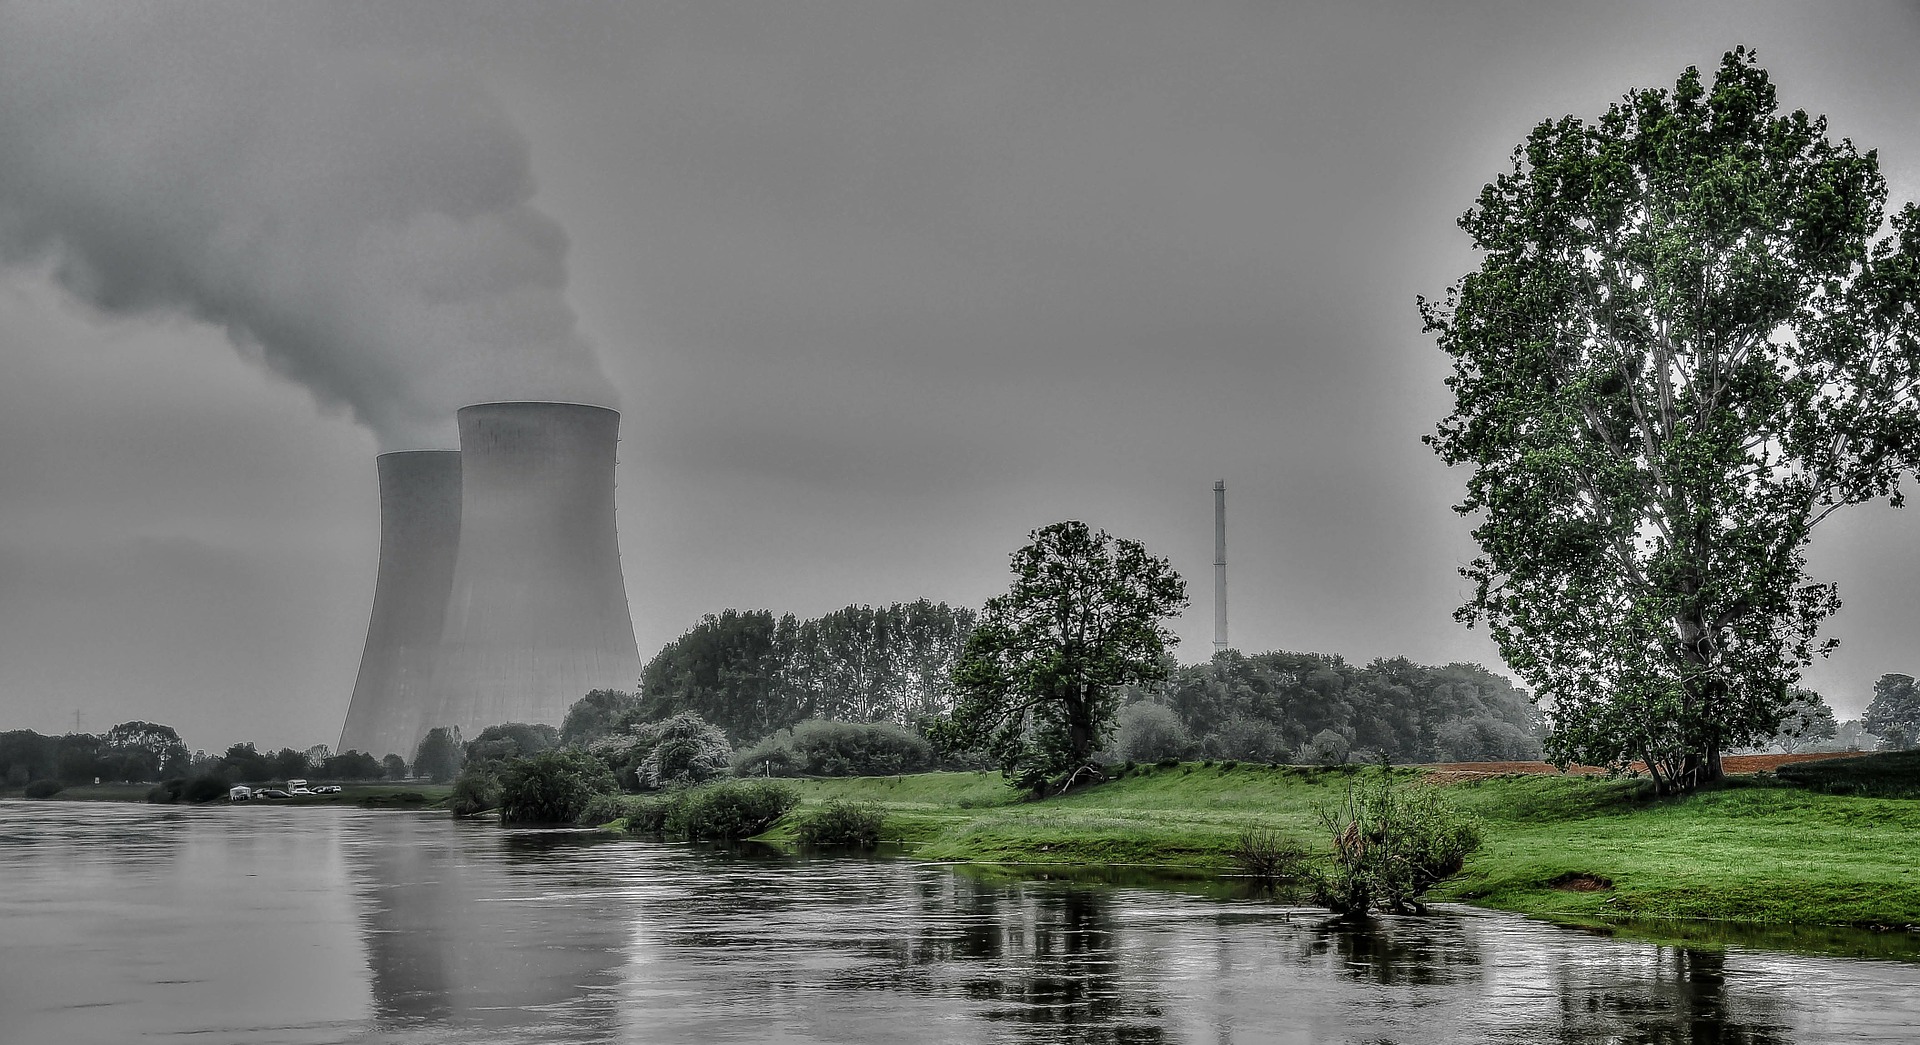 nuclear-power-plant-261119_1920.jpg